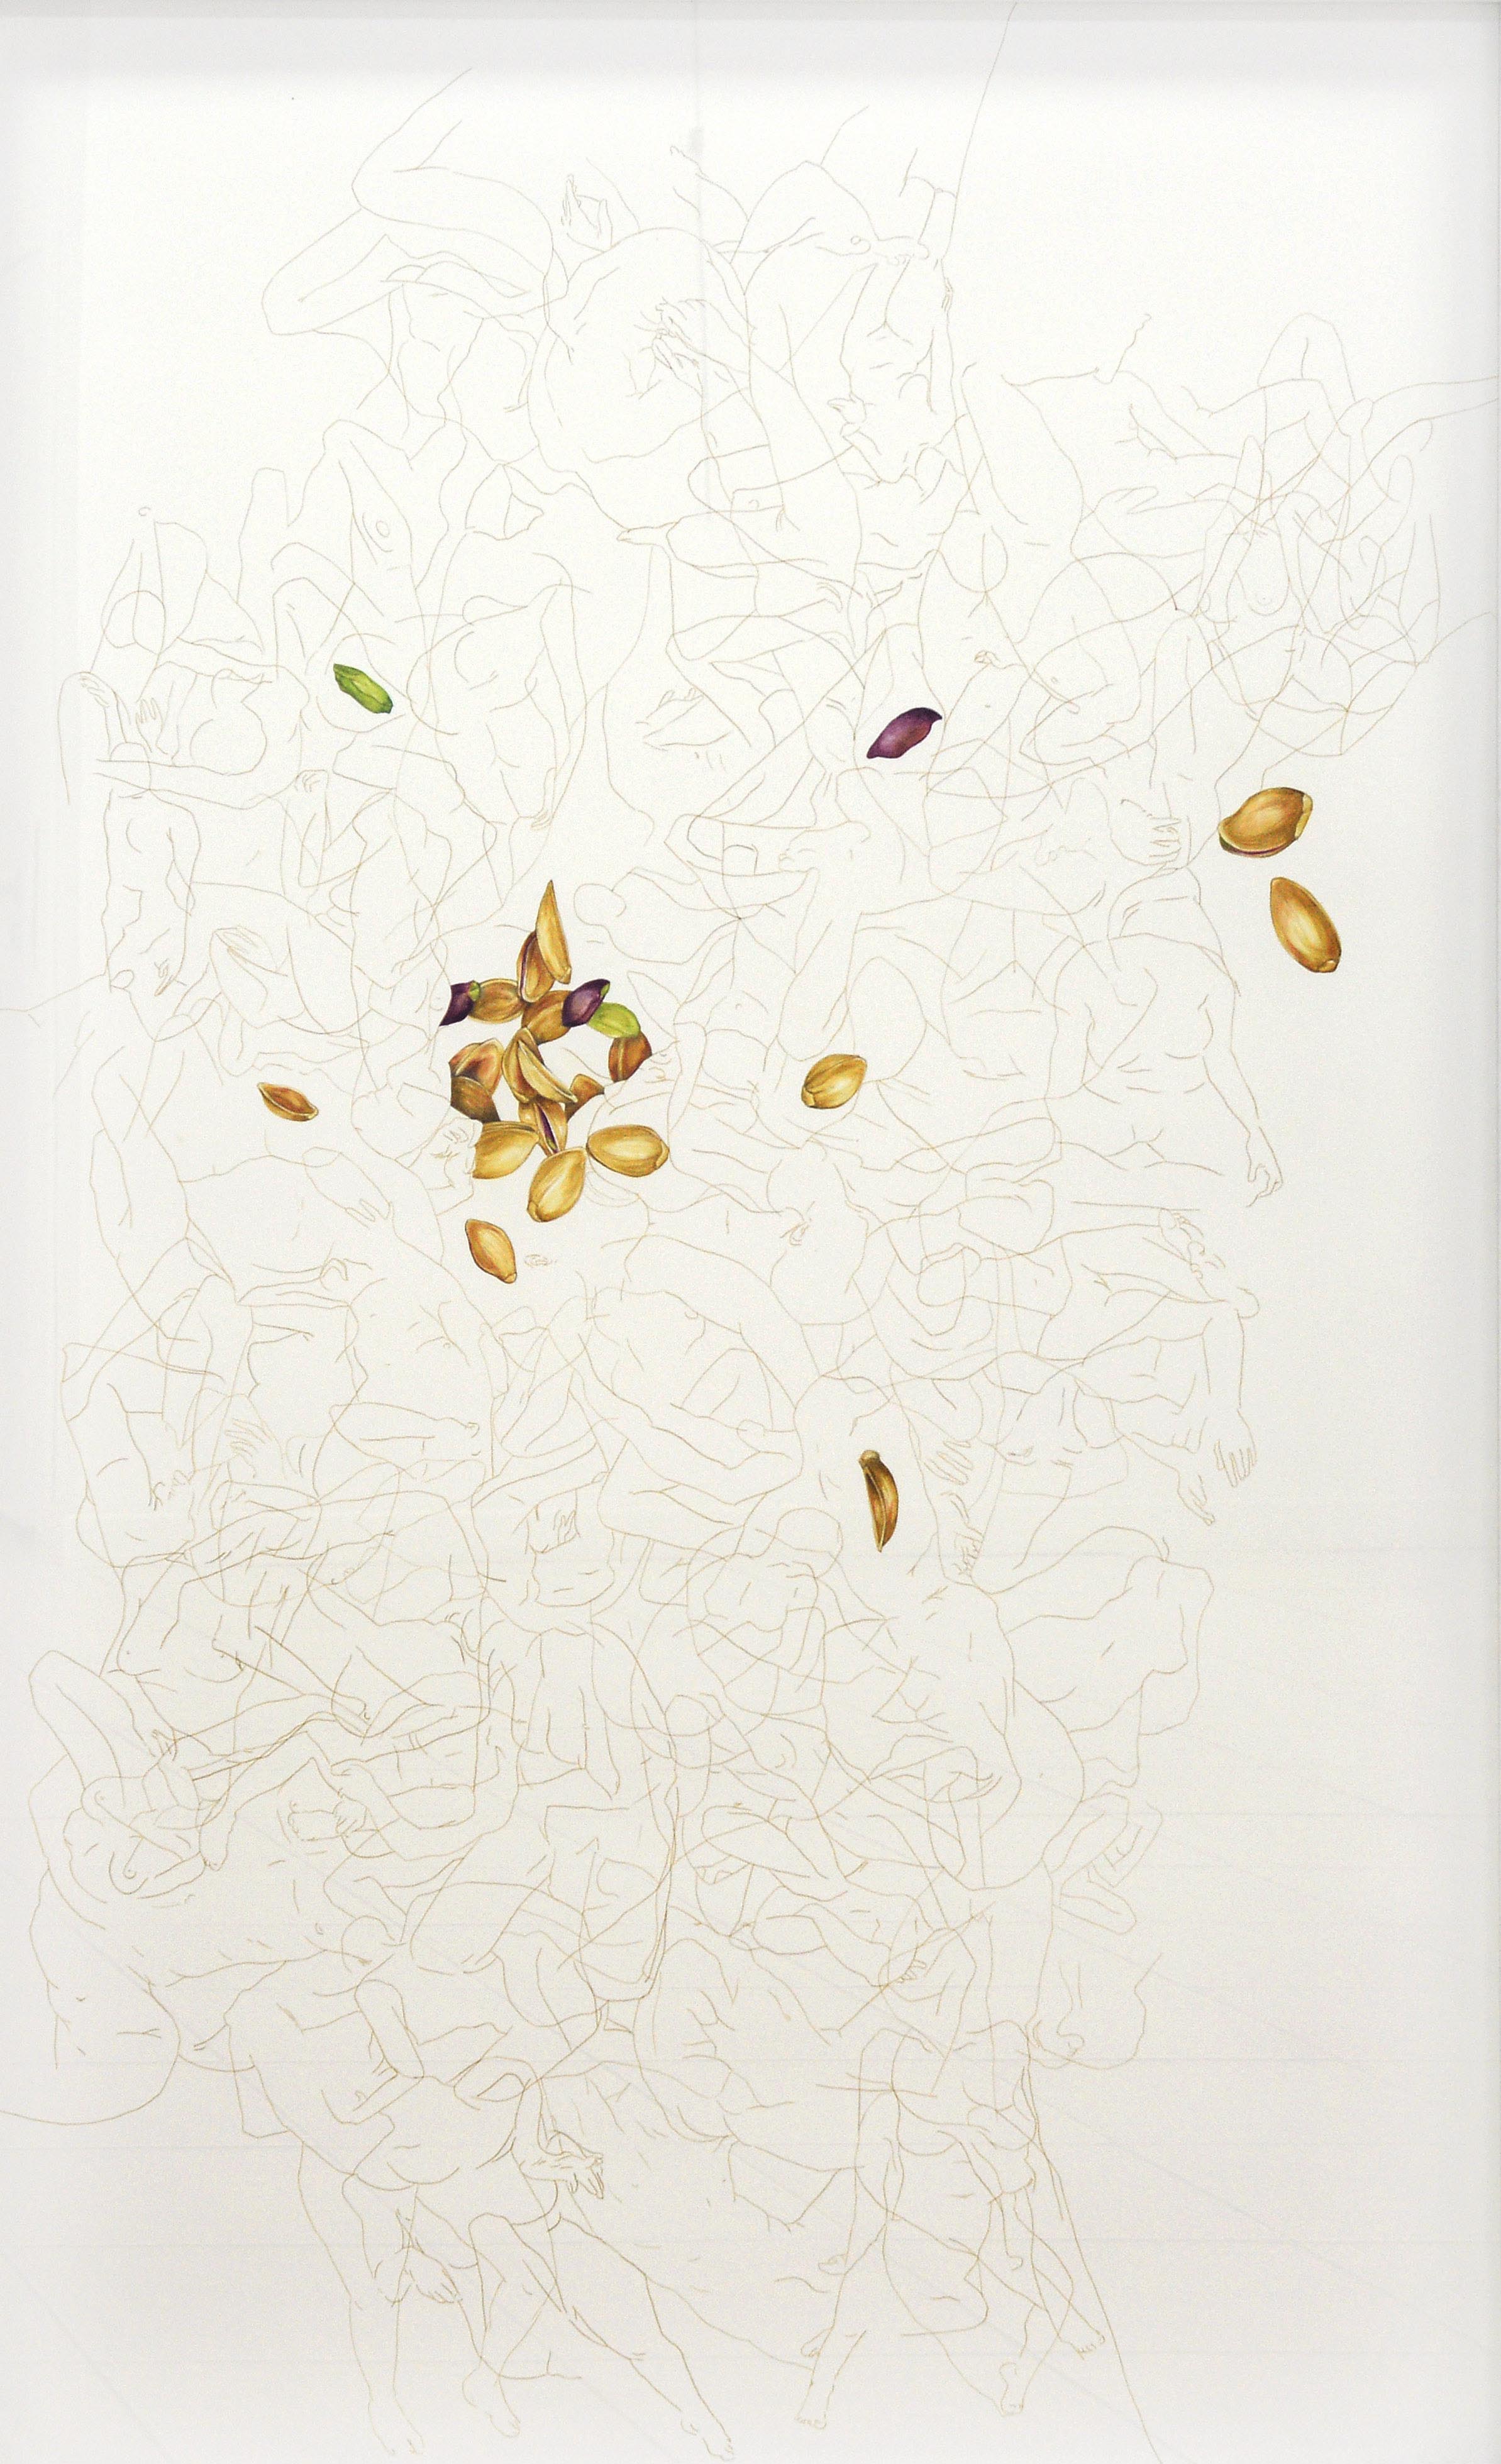 İsimsiz- Untitled, 2013, Kağıt üzerine karışık teknik- Mixed media on paper, 150x100 cm